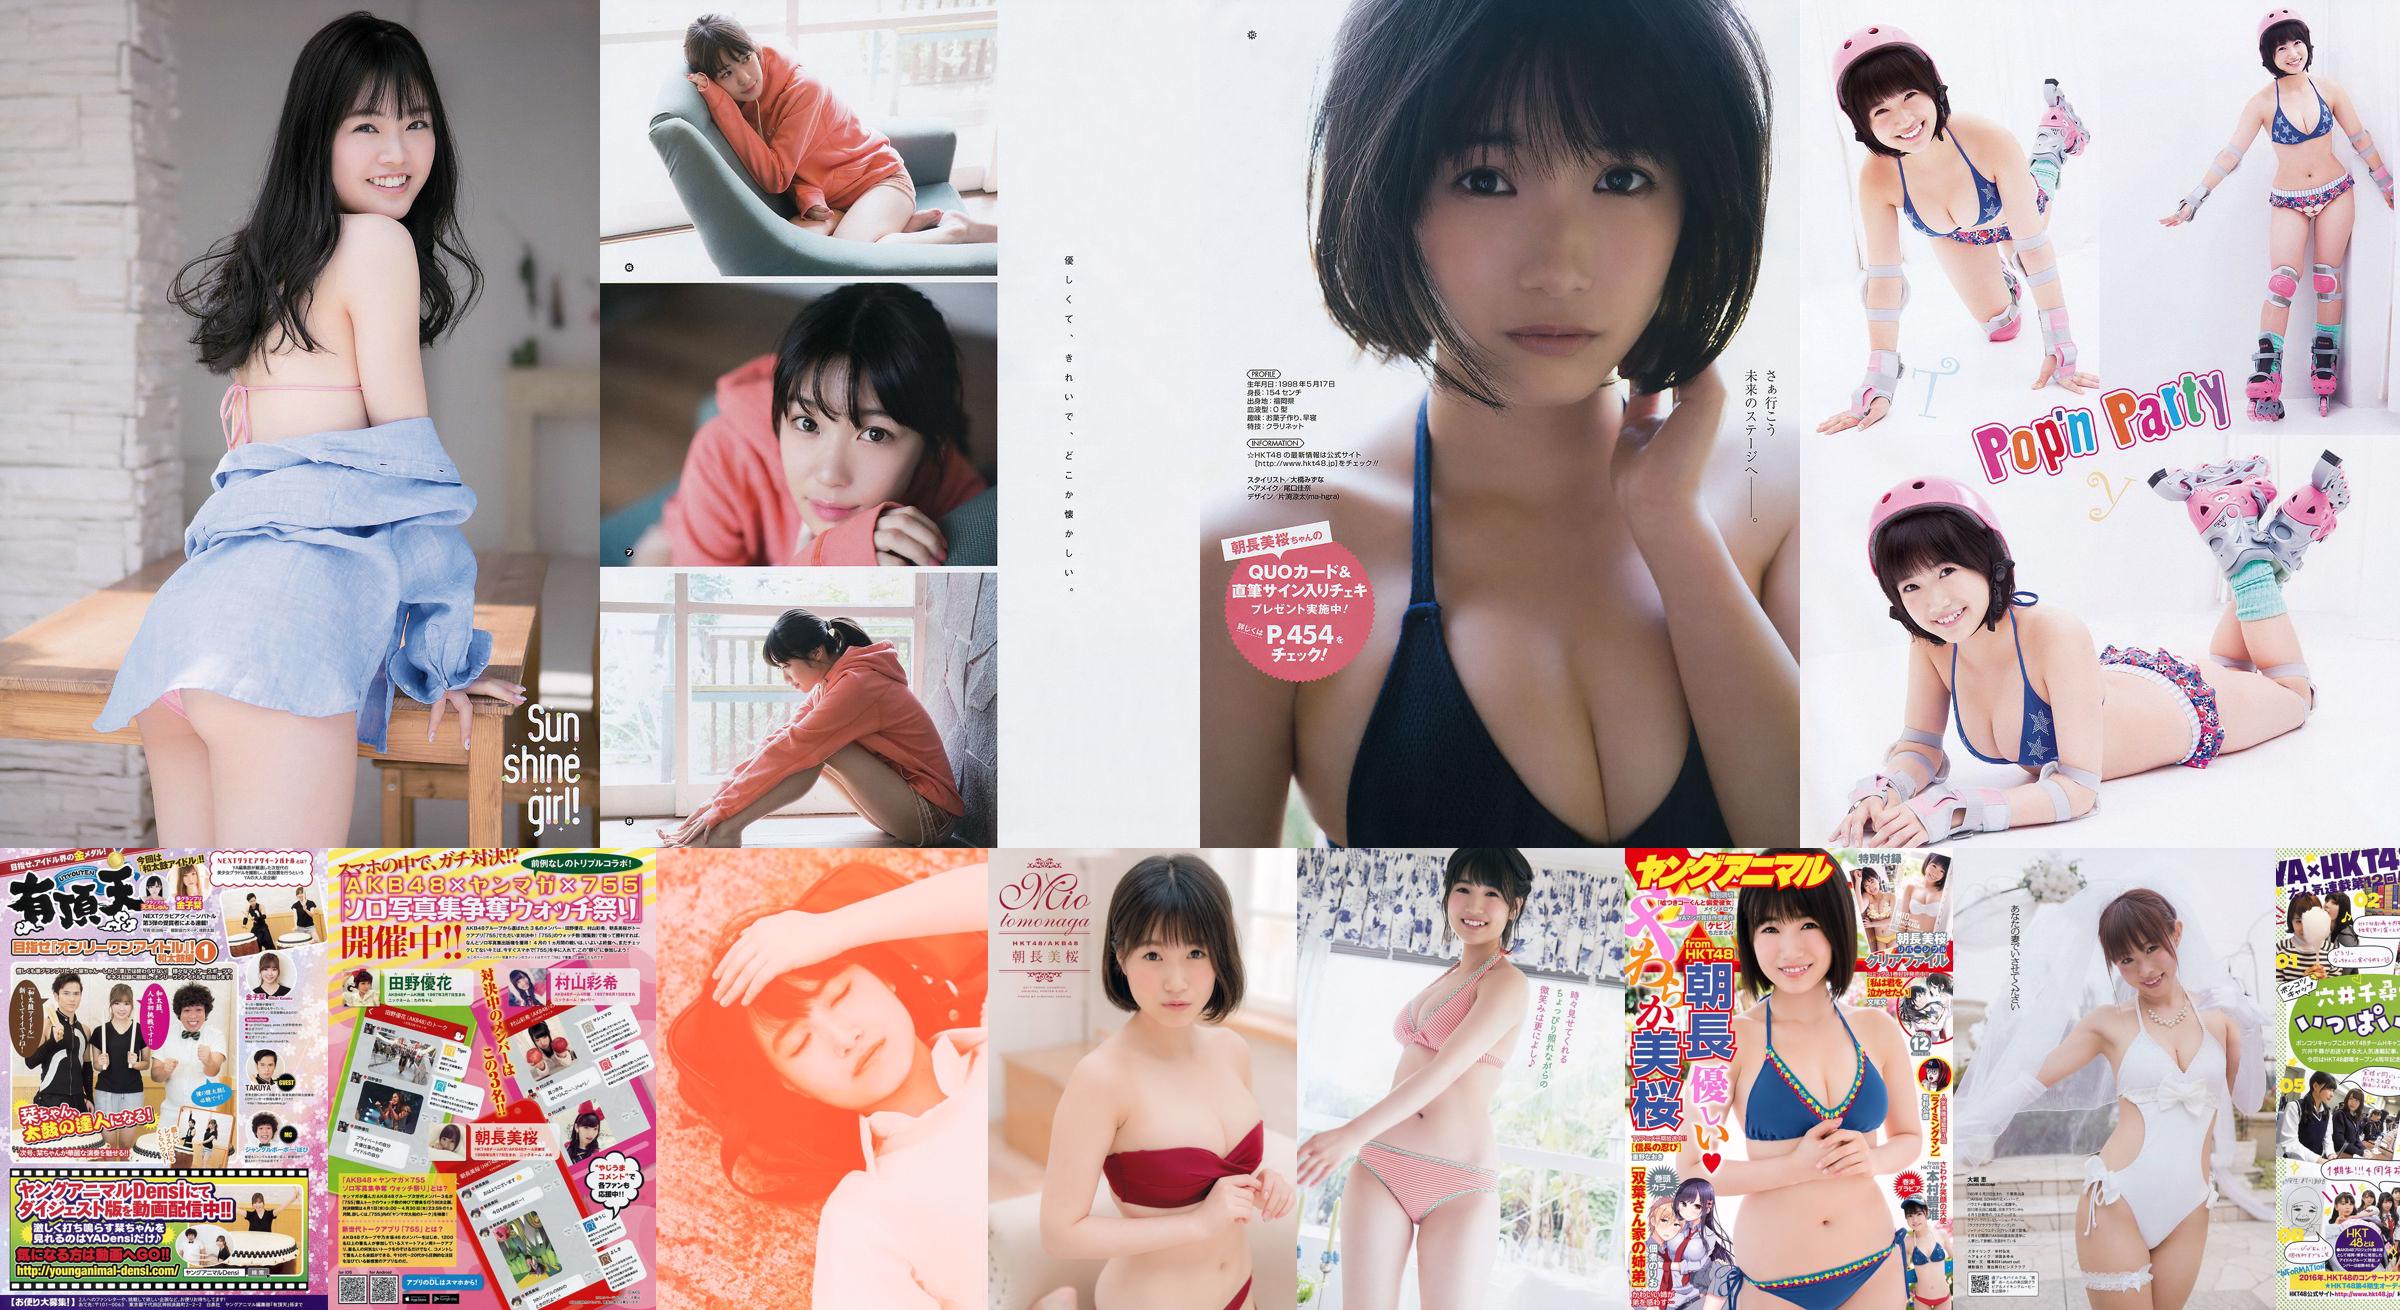 [Young Magazine] Mio Tomonaga Haruka Kodama Natsumi Matsuoka Chiharu Saito 2015 No.21 Foto Moshi No.484f0a Pagina 6